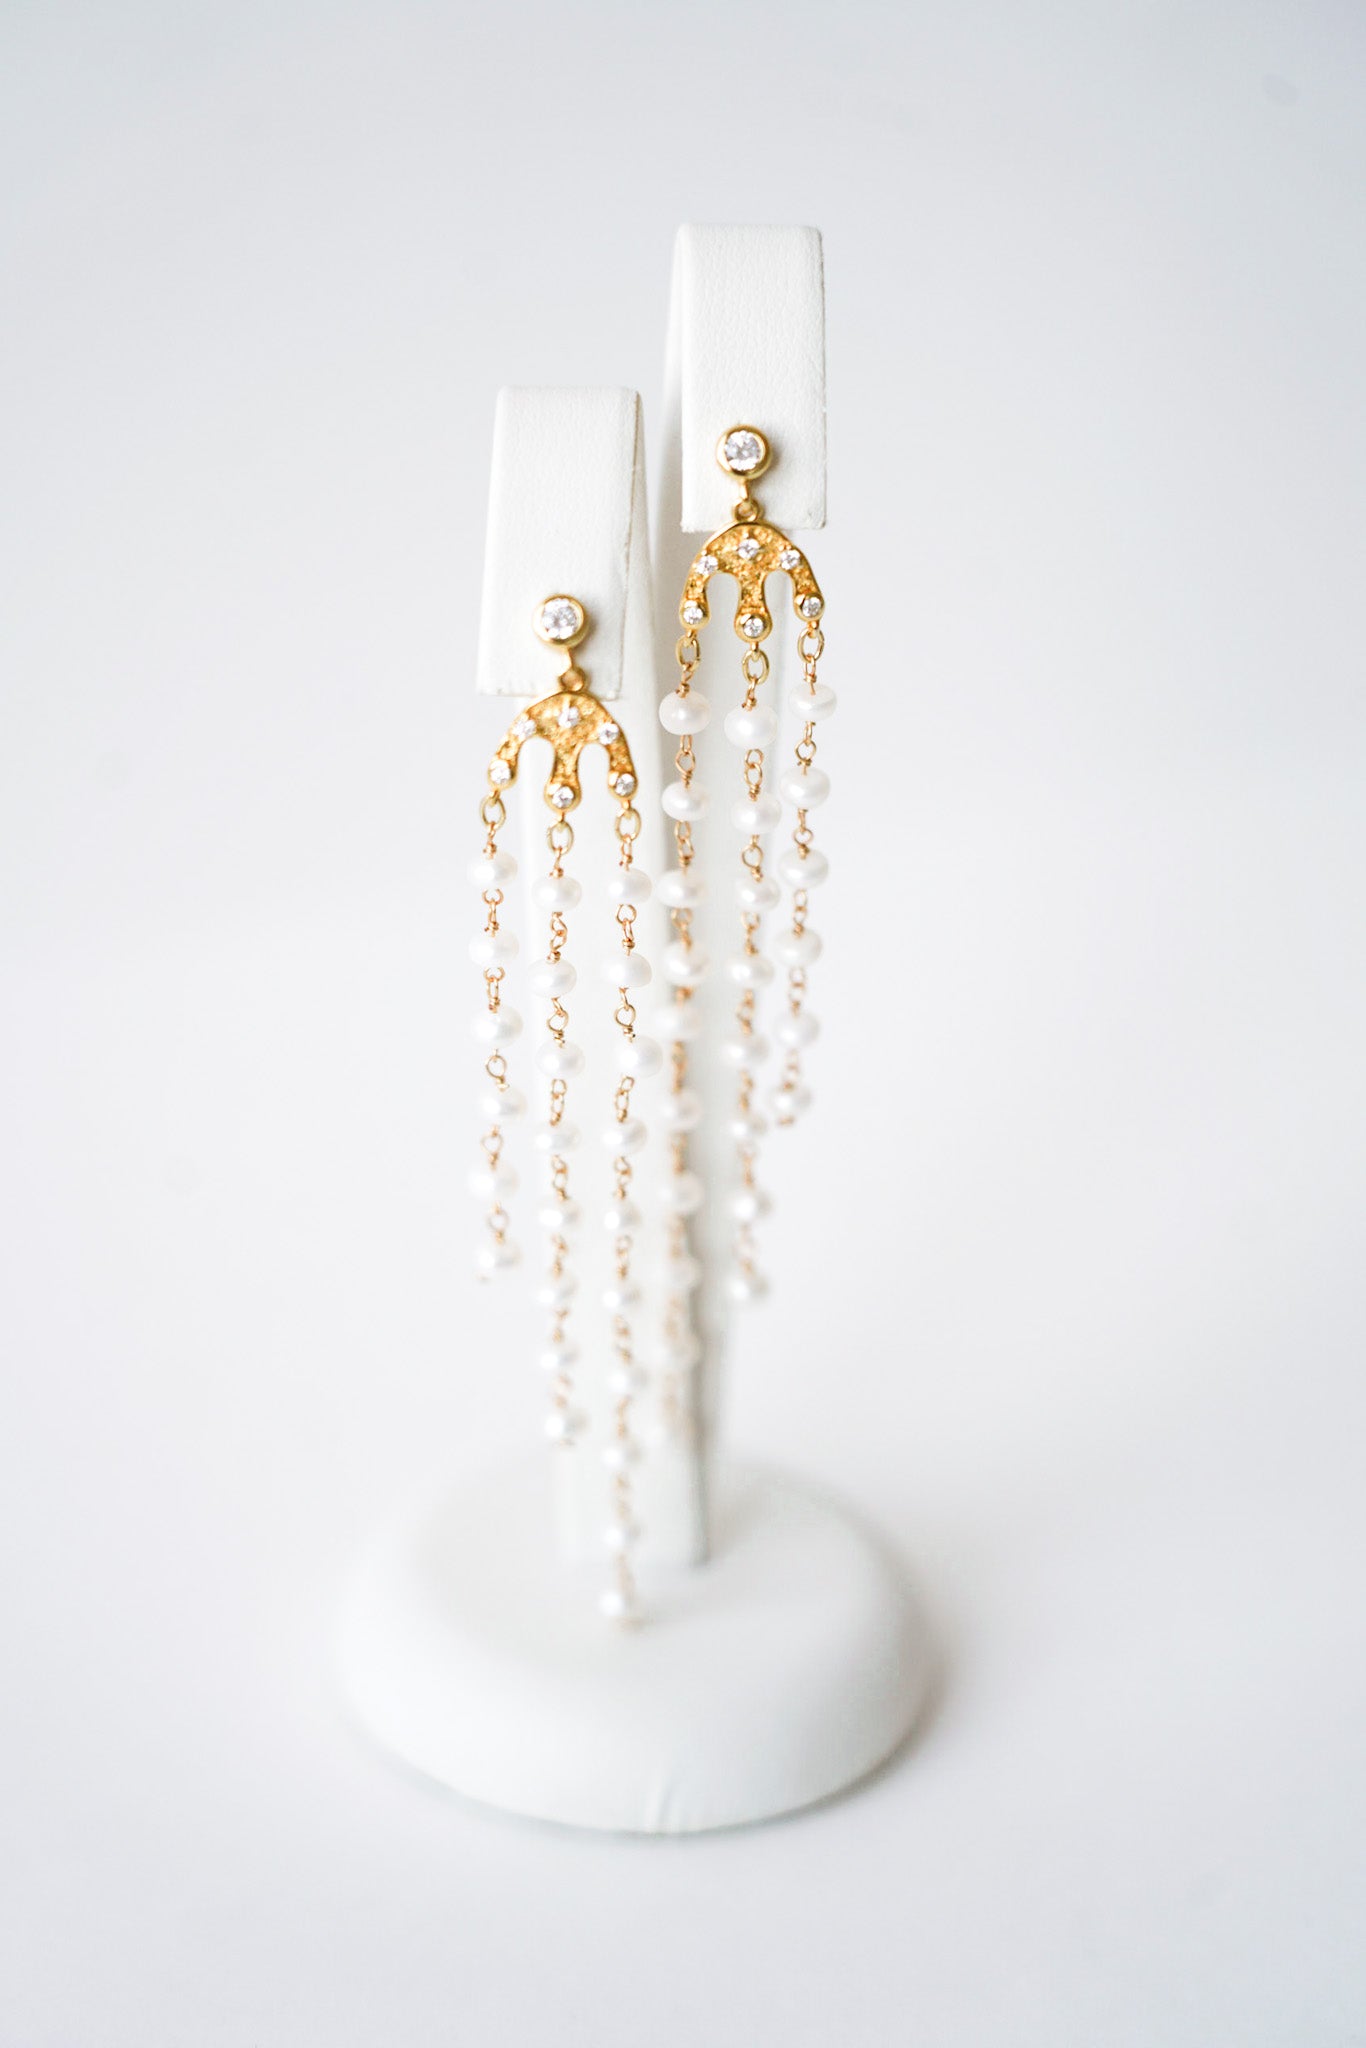 boucles d'oreilles pour une mariée avec des chaines perlées et une attache avec une cristaux 